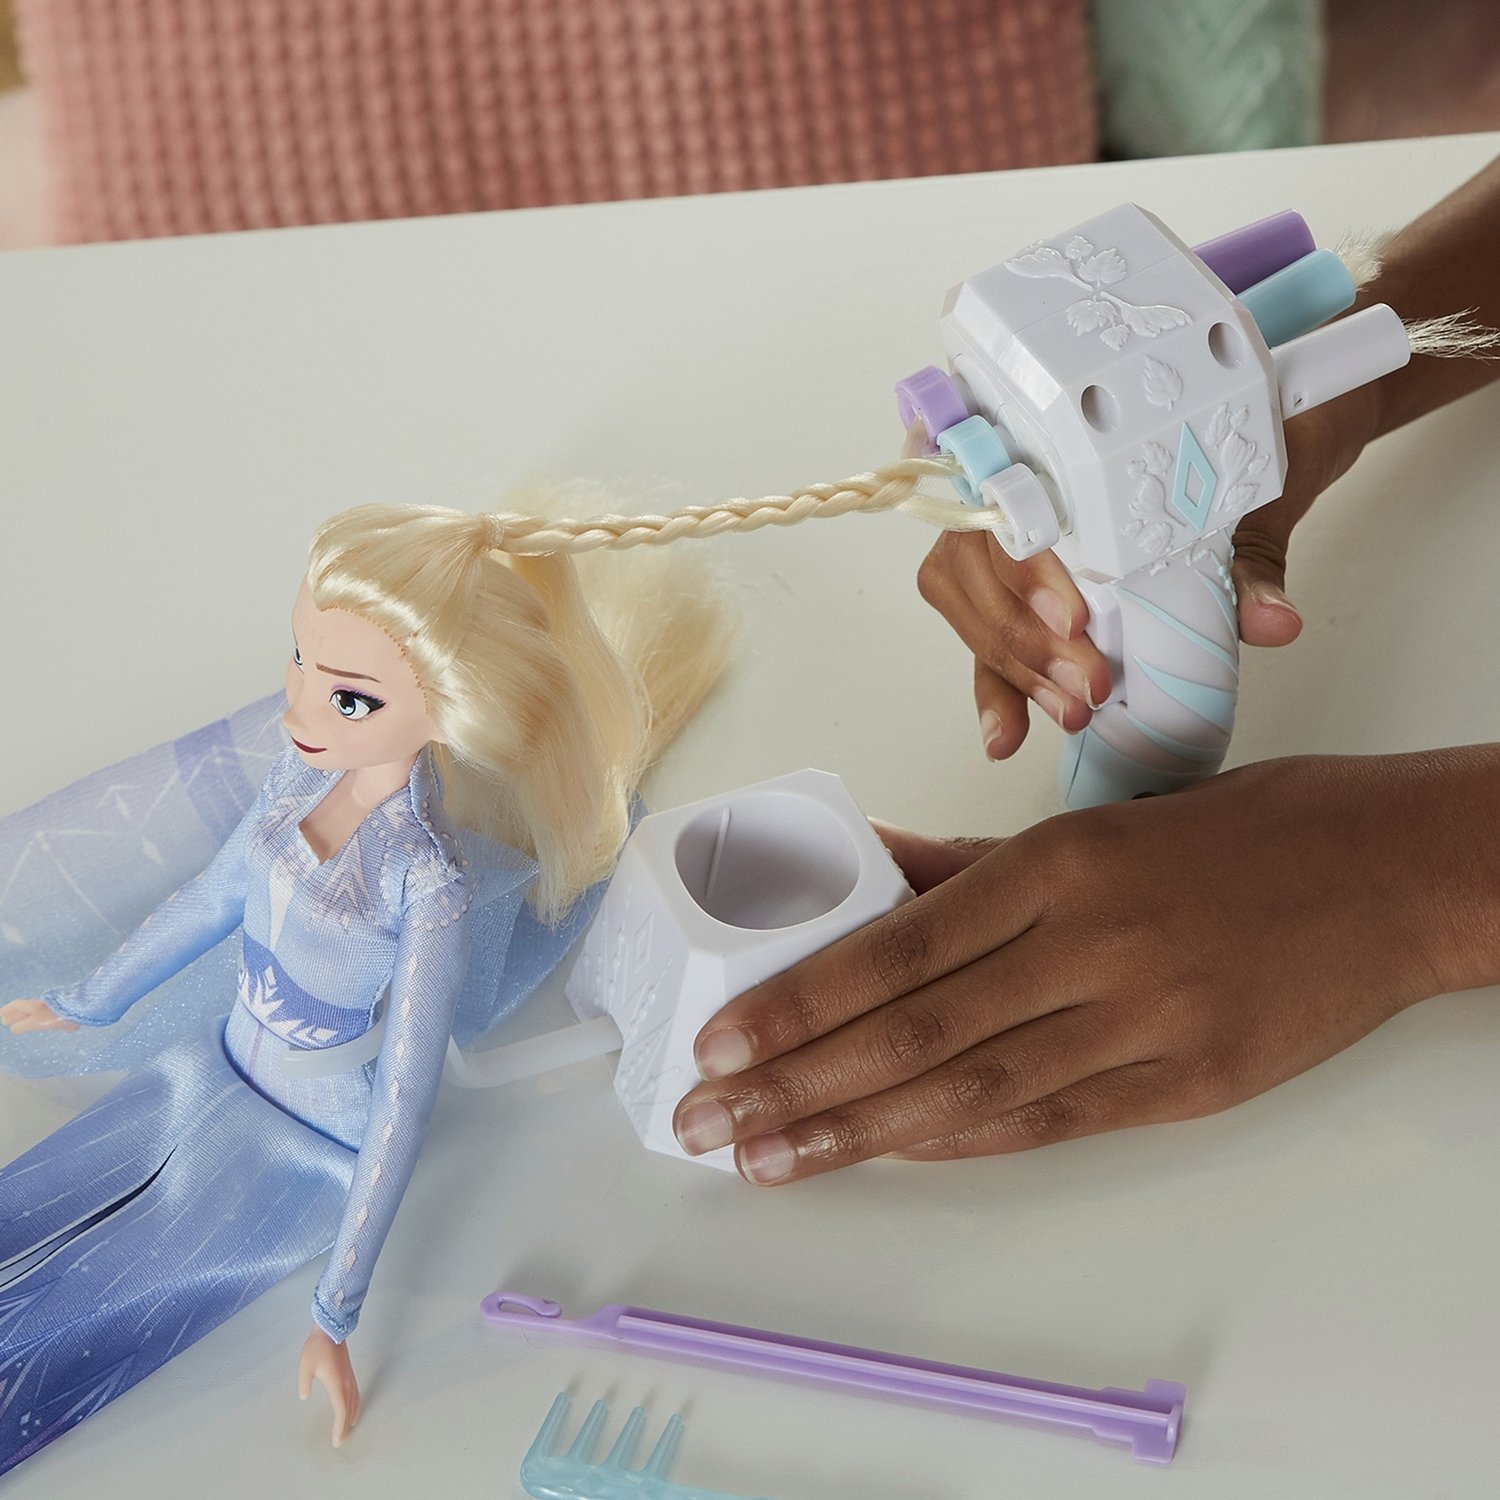 Кукла Эльза Disney Princess, Холодное сердце 2 Магия причесок  